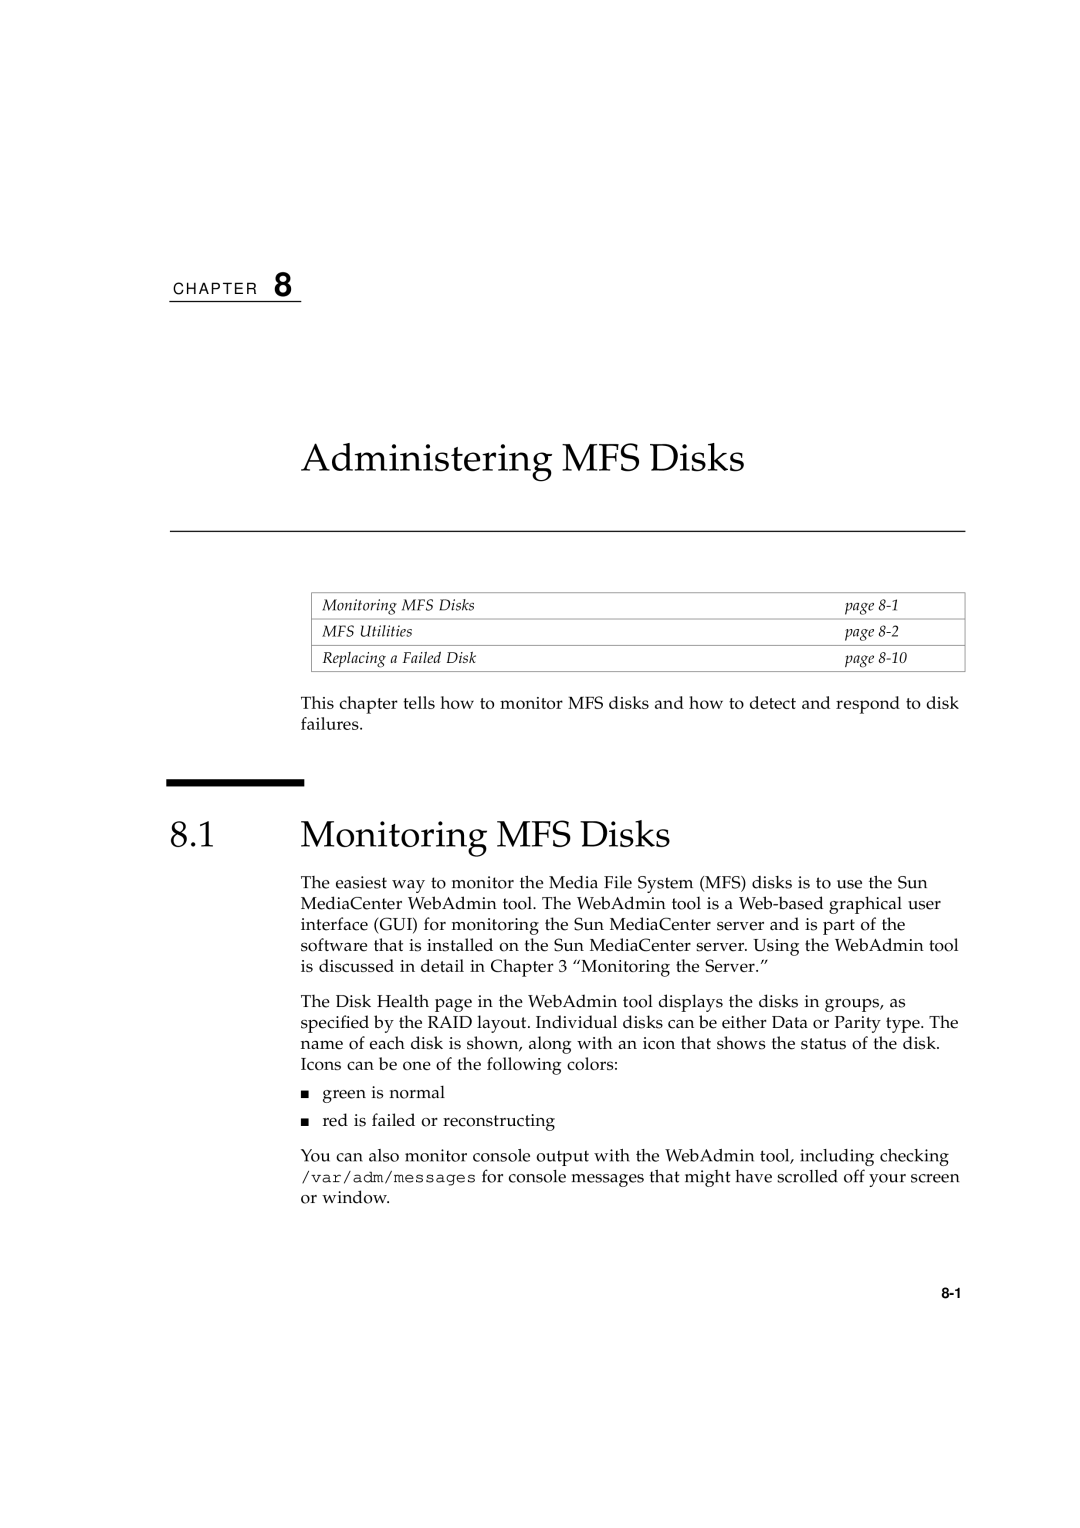 Sun Microsystems 2.1 manual Administering MFS Disks, Monitoring MFS Disks 